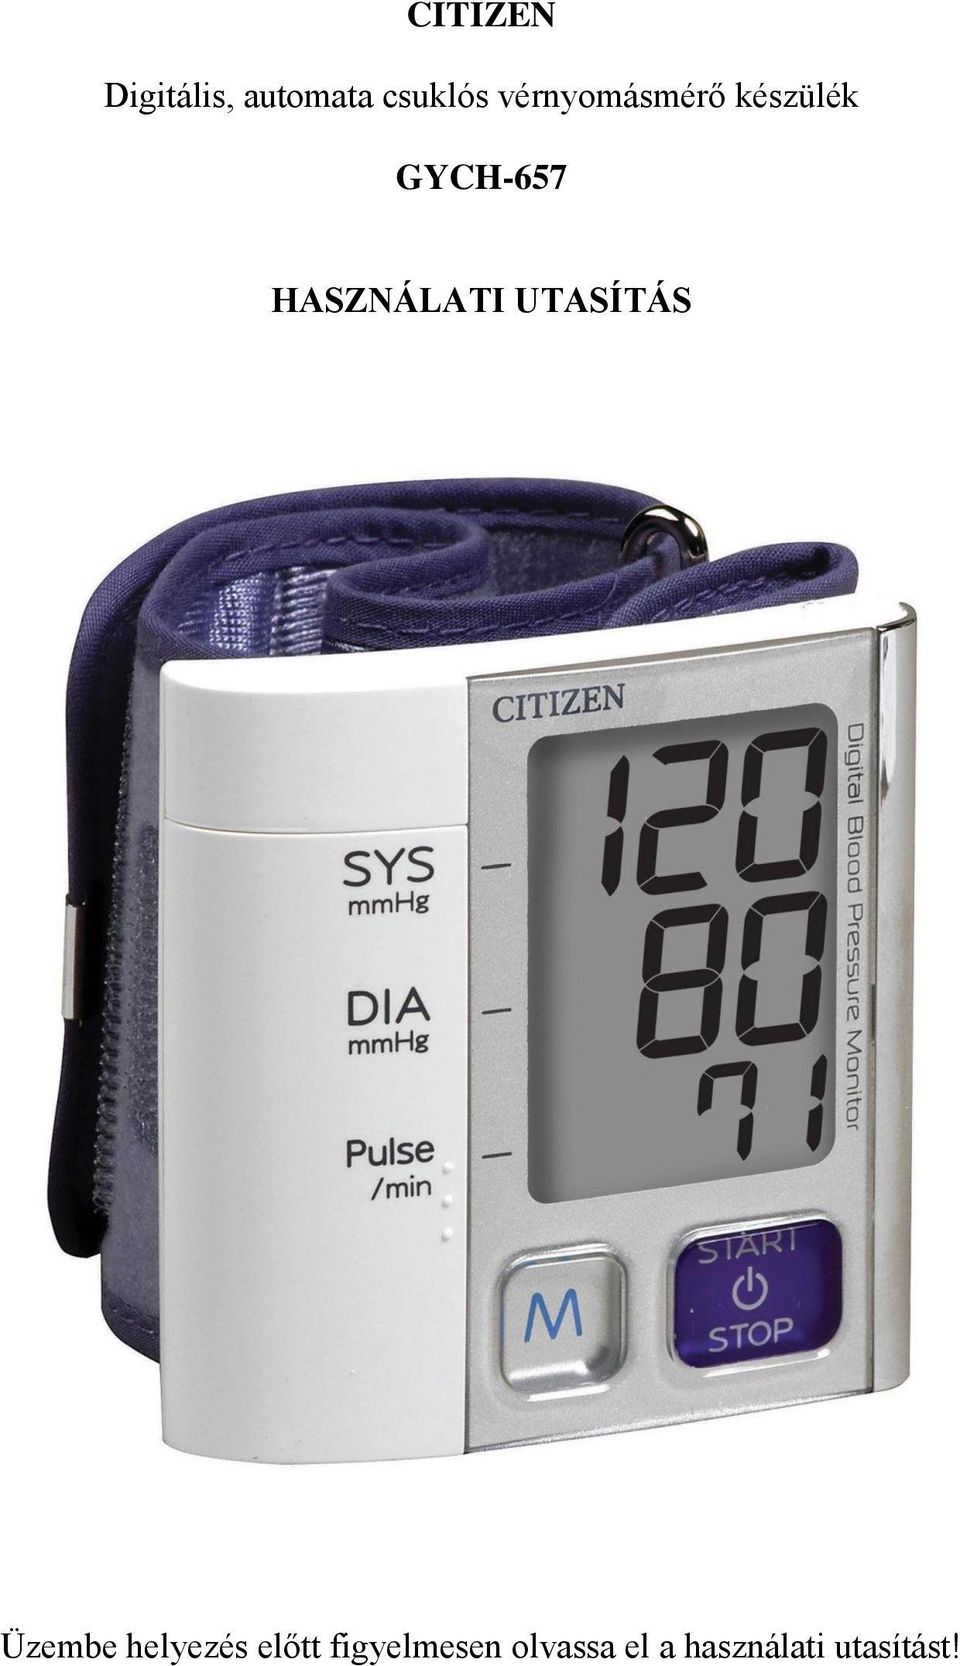 CITIZEN. Digitális, automata csuklós vérnyomásmérő készülék GYCH-657  HASZNÁLATI UTASÍTÁS - PDF Free Download